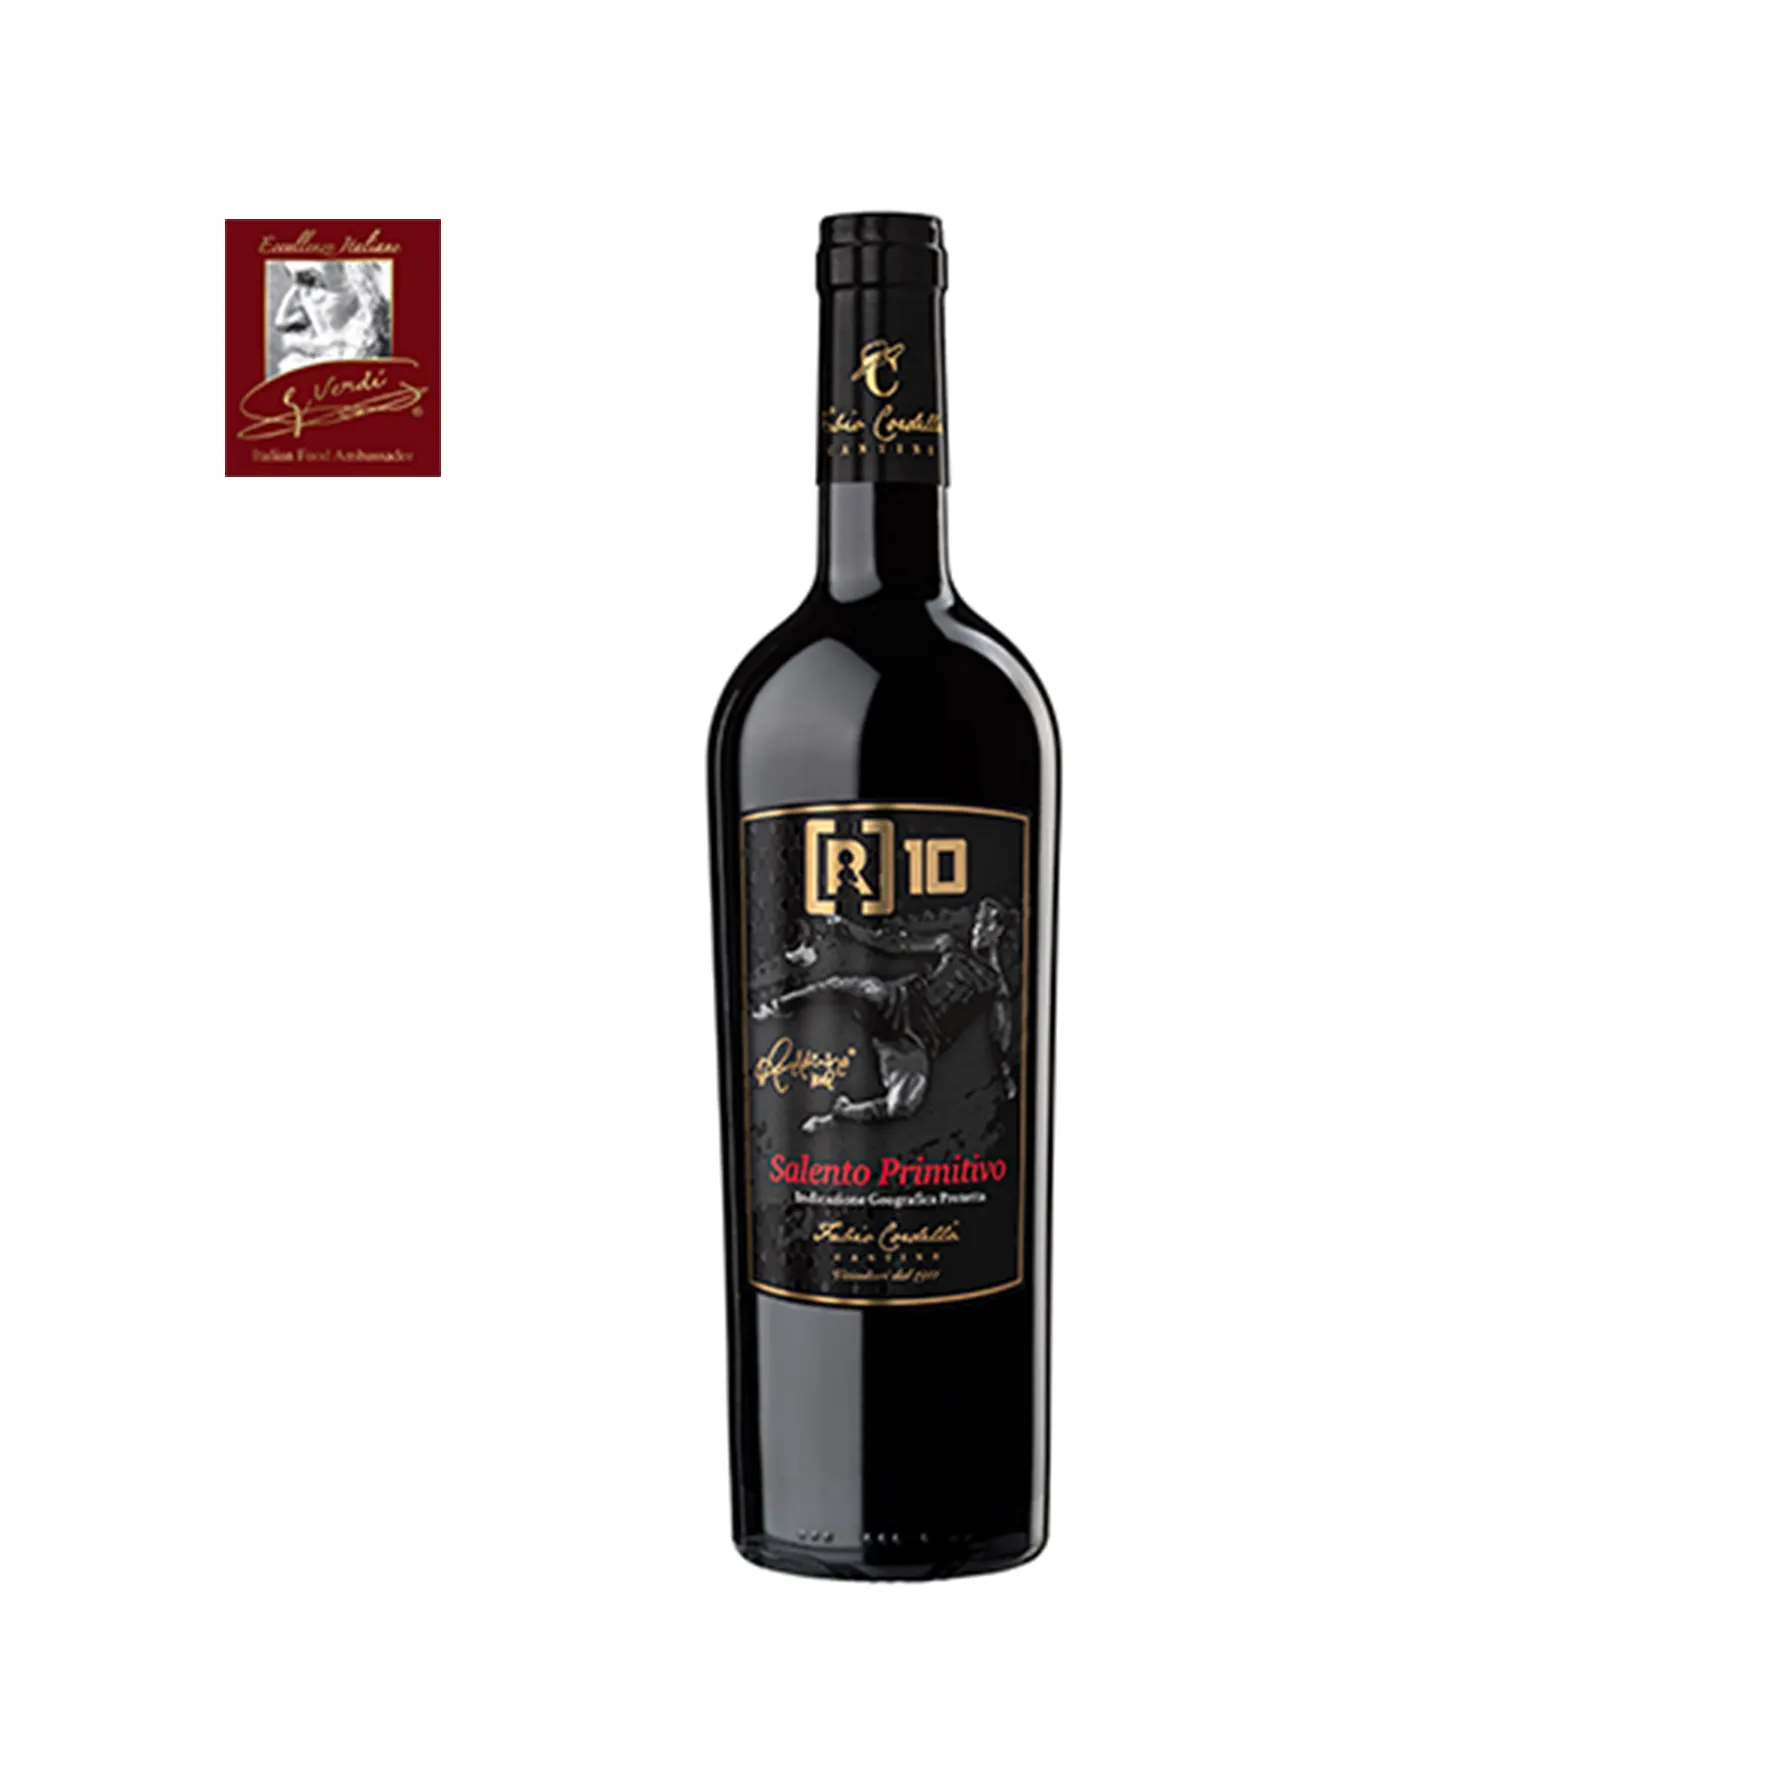 Ronaldinho [R]10 Italienischer Rotwein Primitivo 750ml Flaschen Der Wein von Champion GVERDI Selection Made Italy Wein